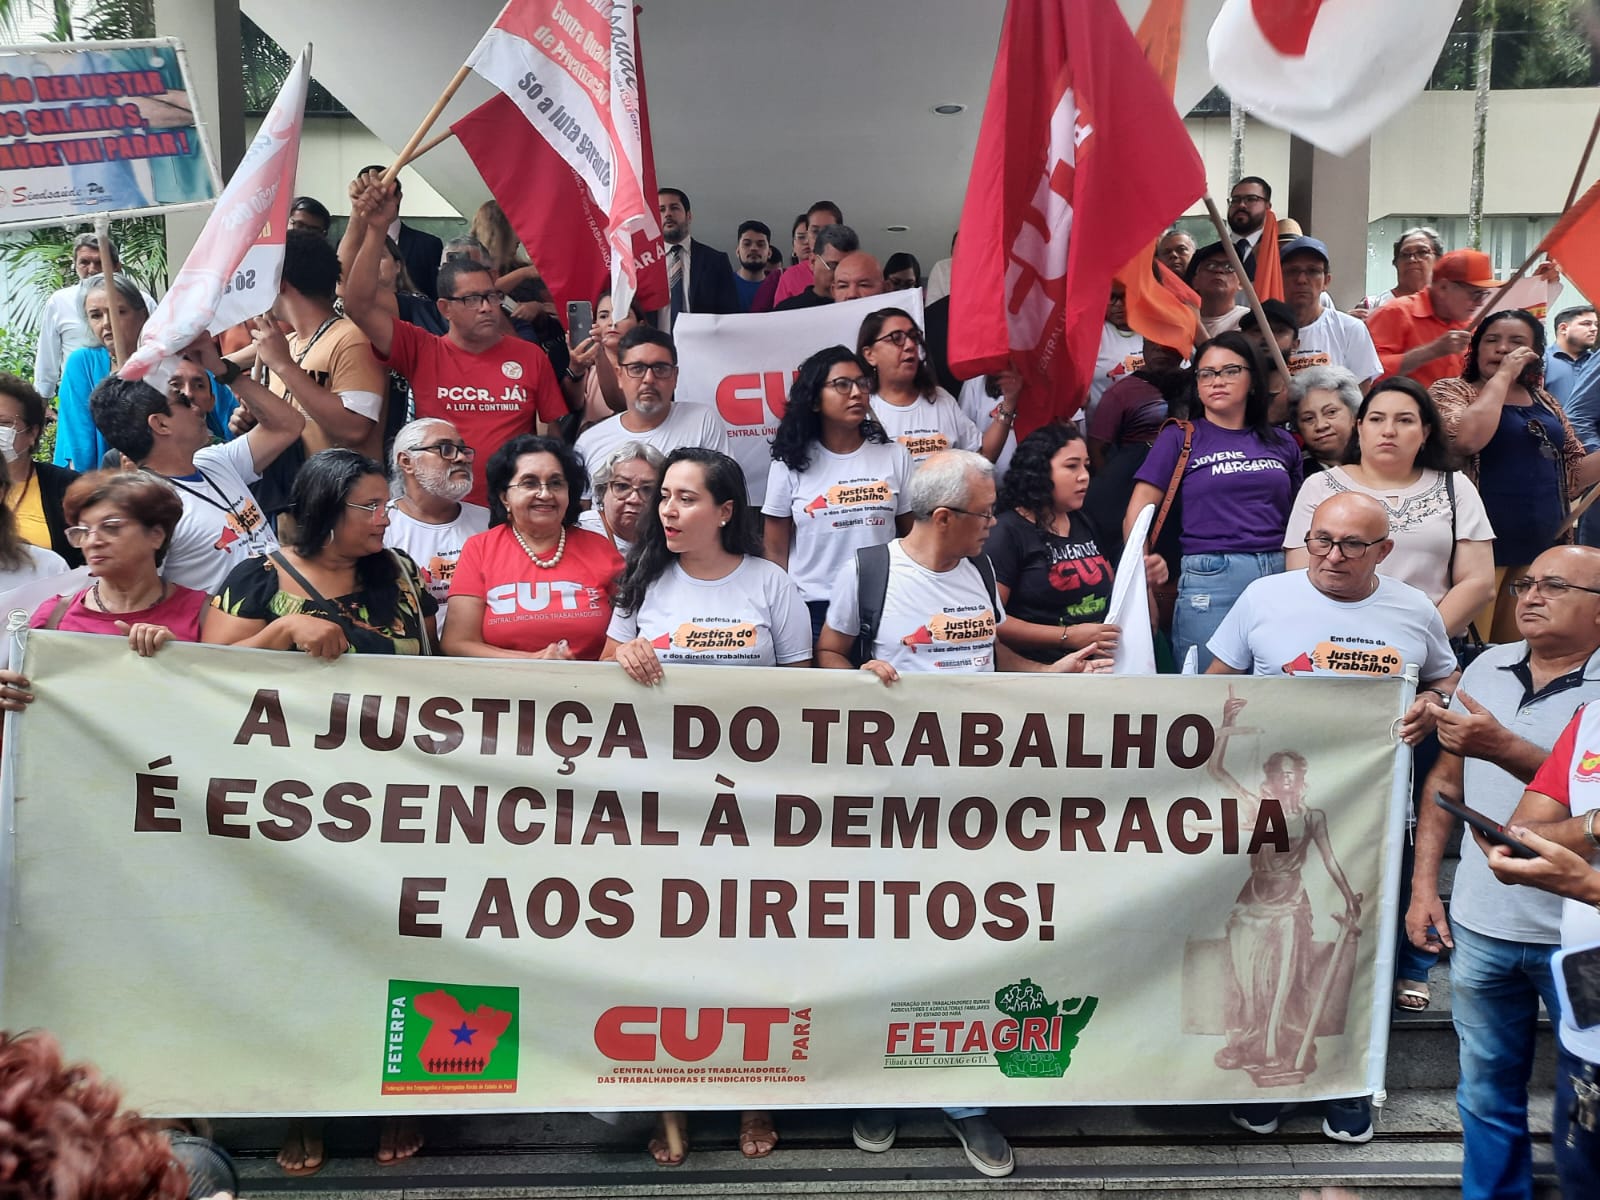 AMATRA 8 participa de mobilização em defesa da Justiça do Trabalho